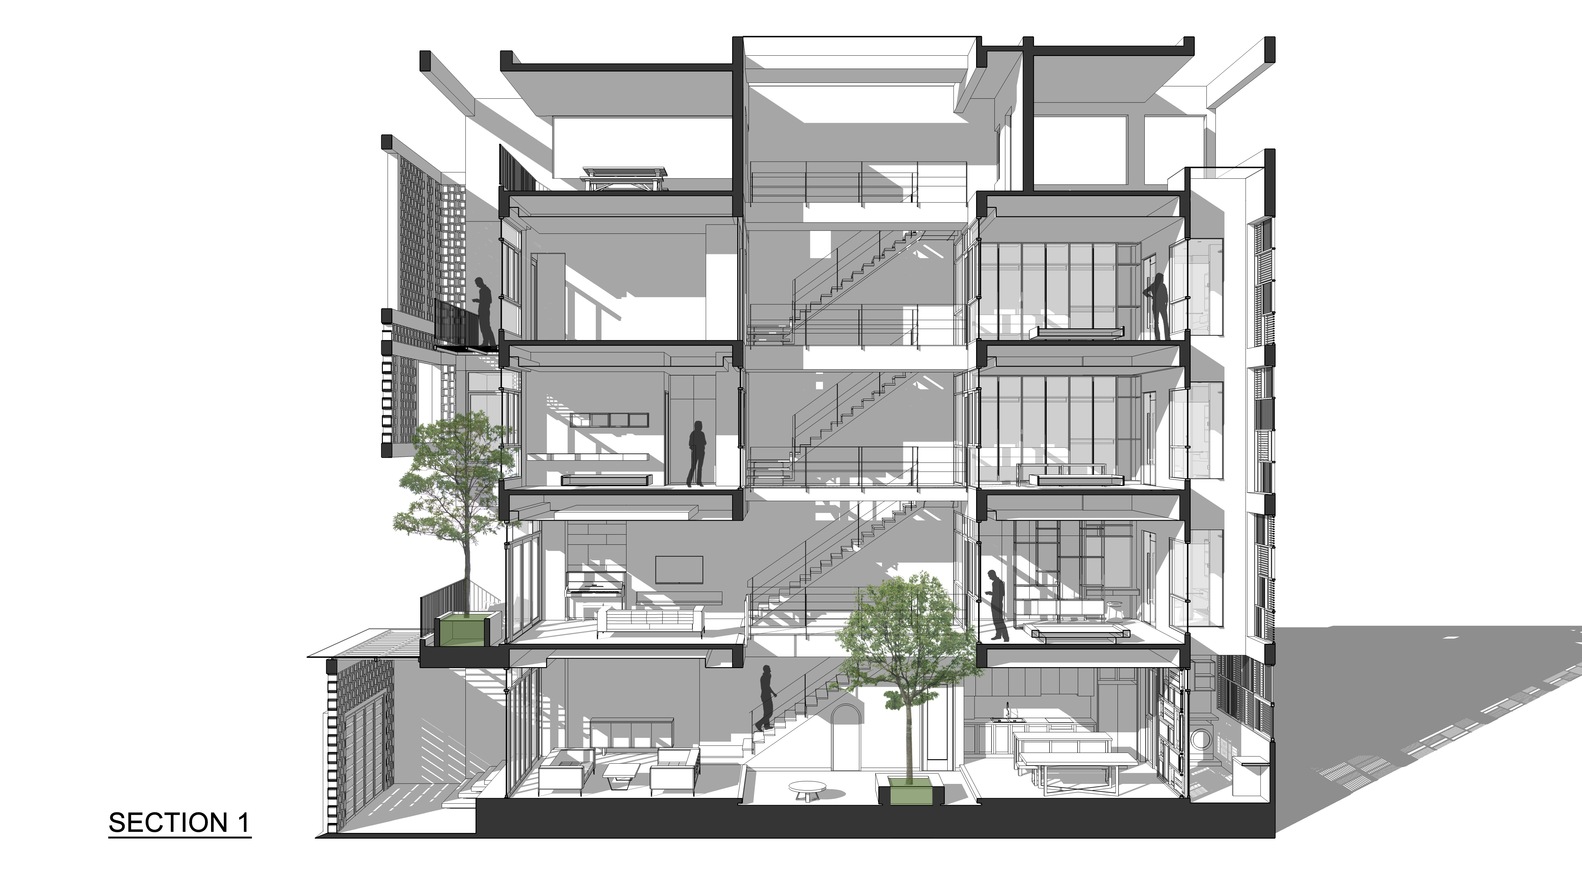 Thiết kế hiện đại kết hợp yếu tố truyền thống Bắc bộ của ngôi nhà 5 tầng ở Hà Nội - Ảnh 51